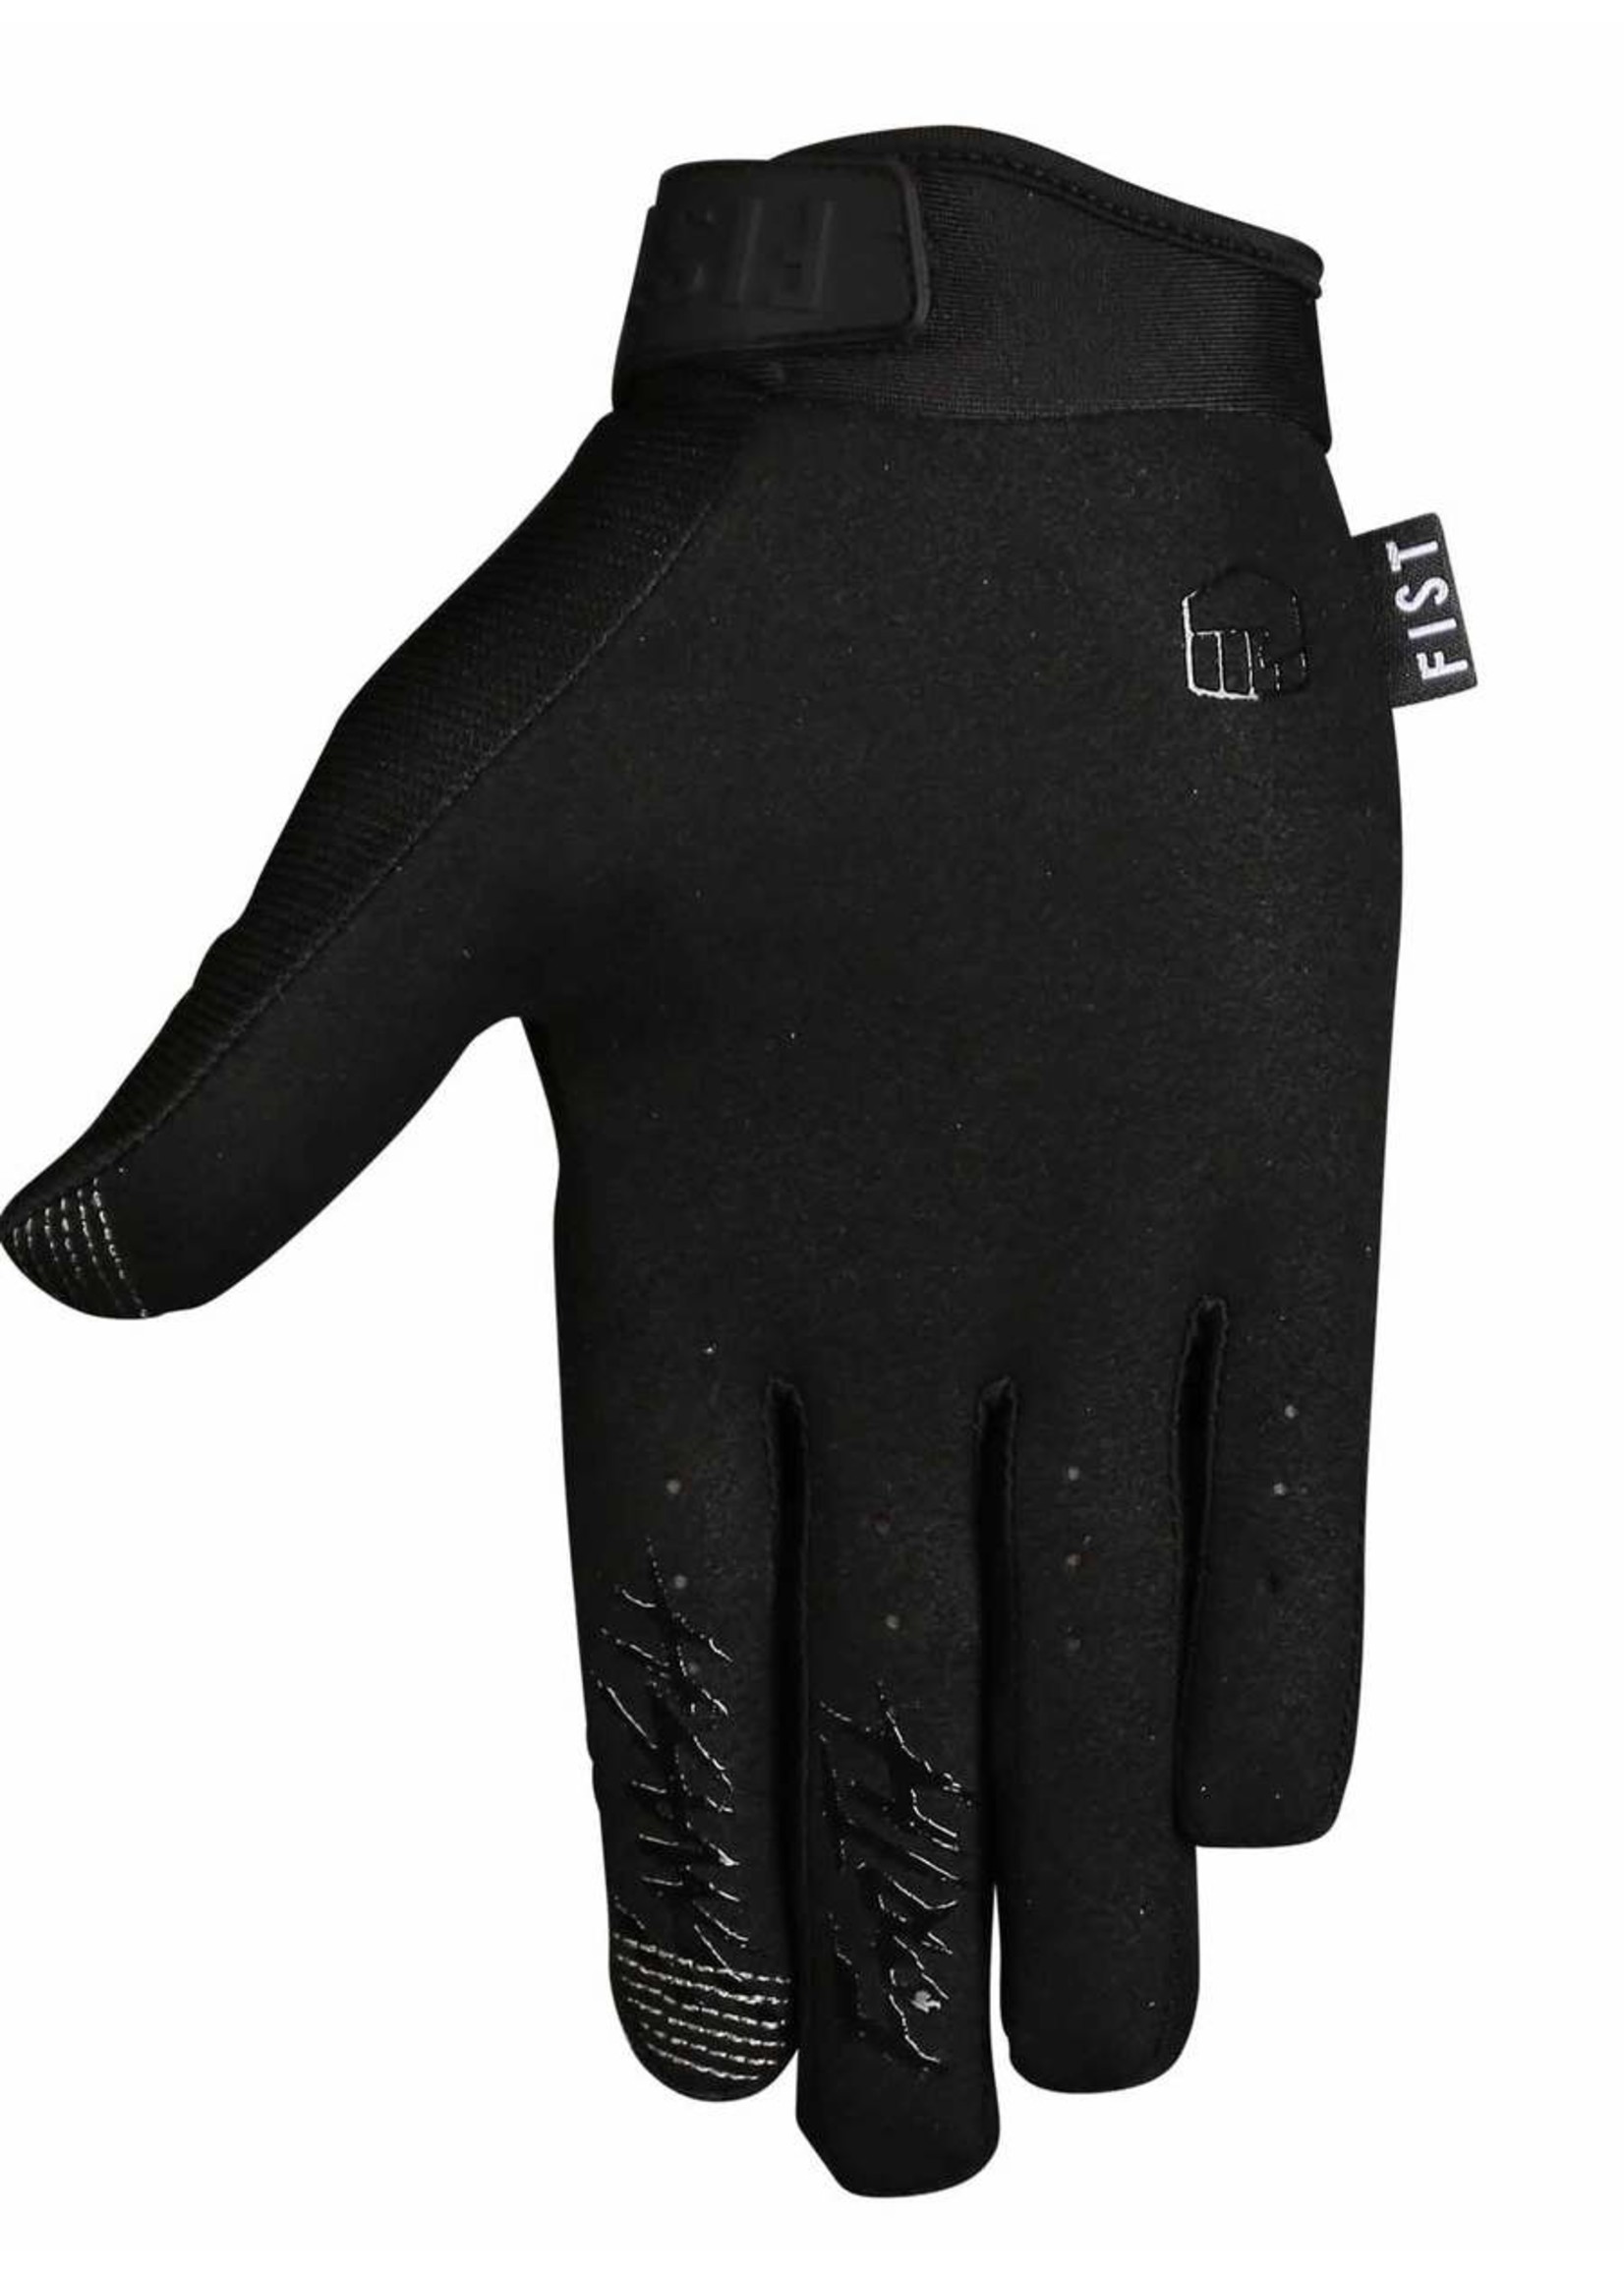 Fist Handwear FIST BLACK STOCKER YOUTH GLOVE